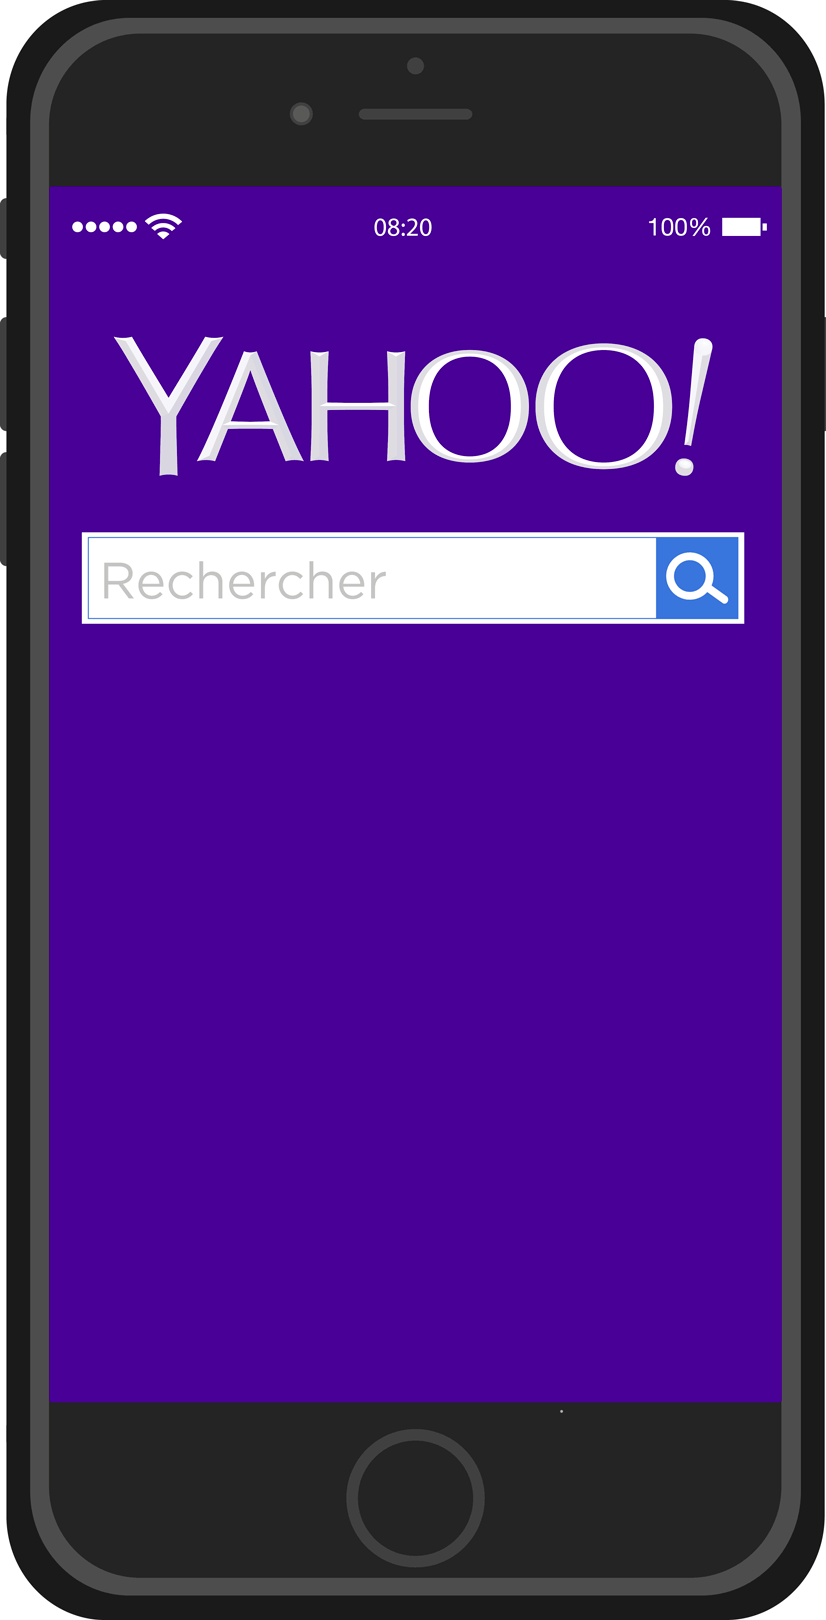 Rétrospective Yahoo 2016 - Catégorie Générale : Sport et politiques en tête des recherches sur Yahoo.fr en 2016[[MORE]]Les élections en France et à l’étranger ainsi que les grands événements sportifs ont rythmés l’année 2016 des utilisateurs de Yahoo...